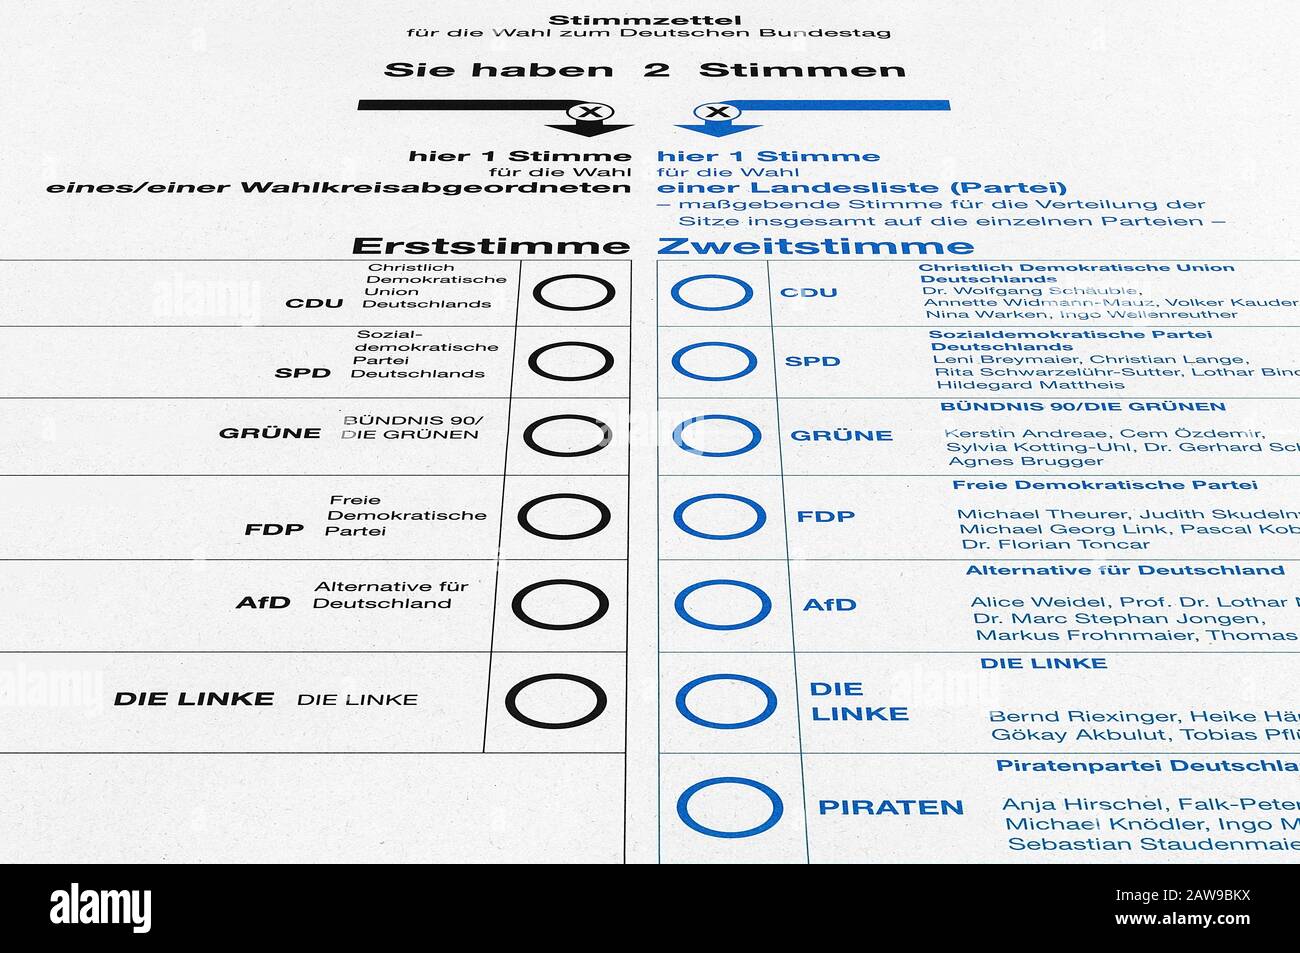 Scheda di voto per elezioni federali / elezioni parlamentari (per il Bundestag) in Germania. Foto Stock